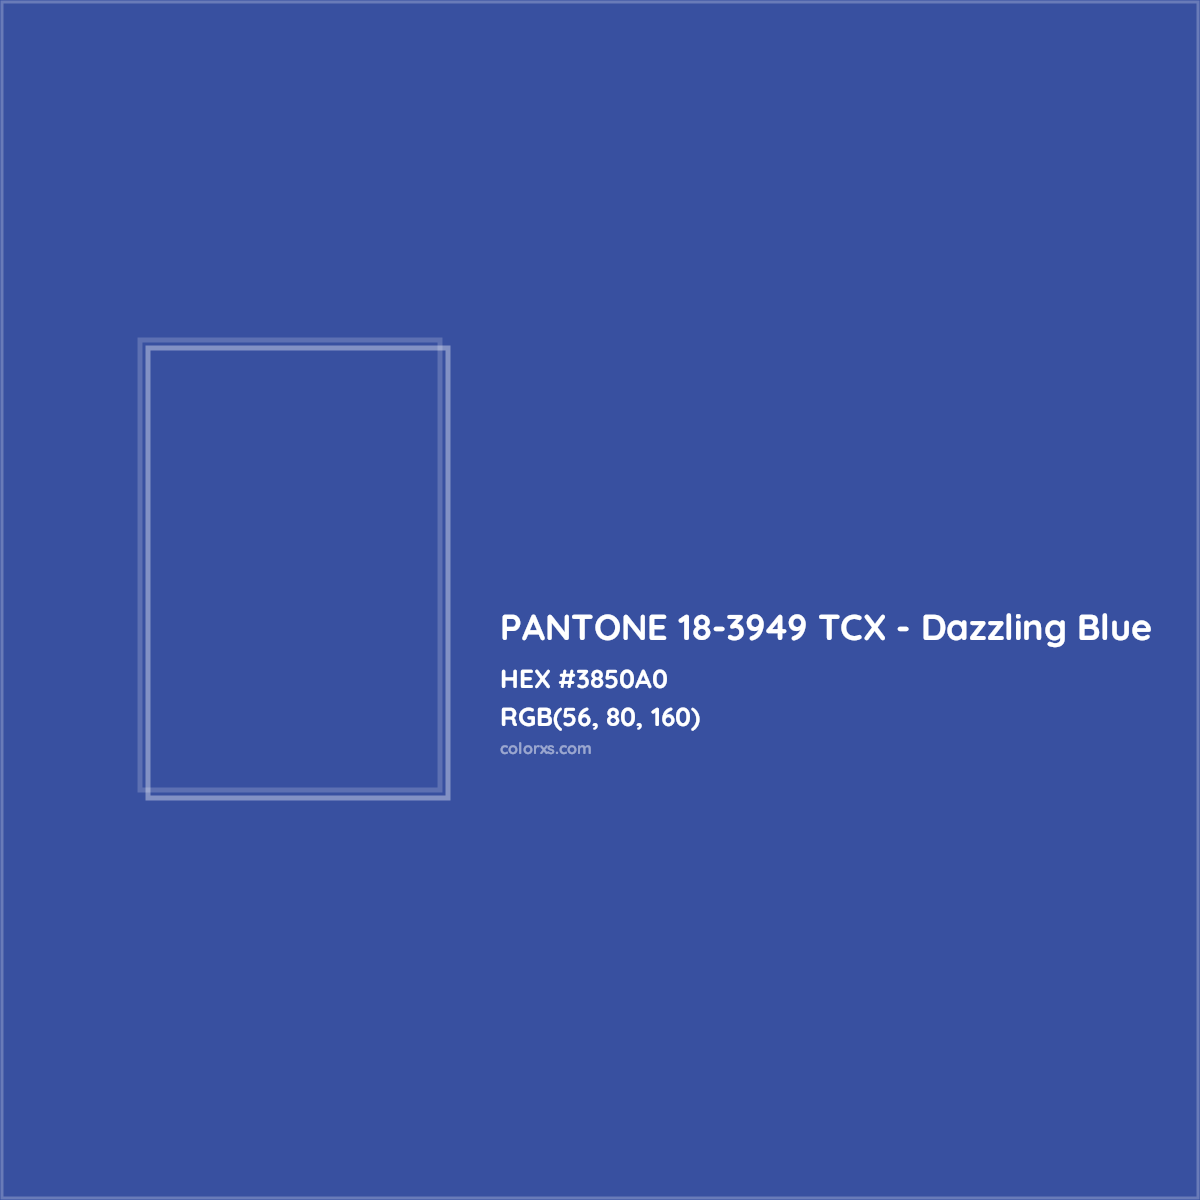 HEX #3850A0 PANTONE 18-3949 TCX - Dazzling Blue CMS Pantone TCX - Color Code